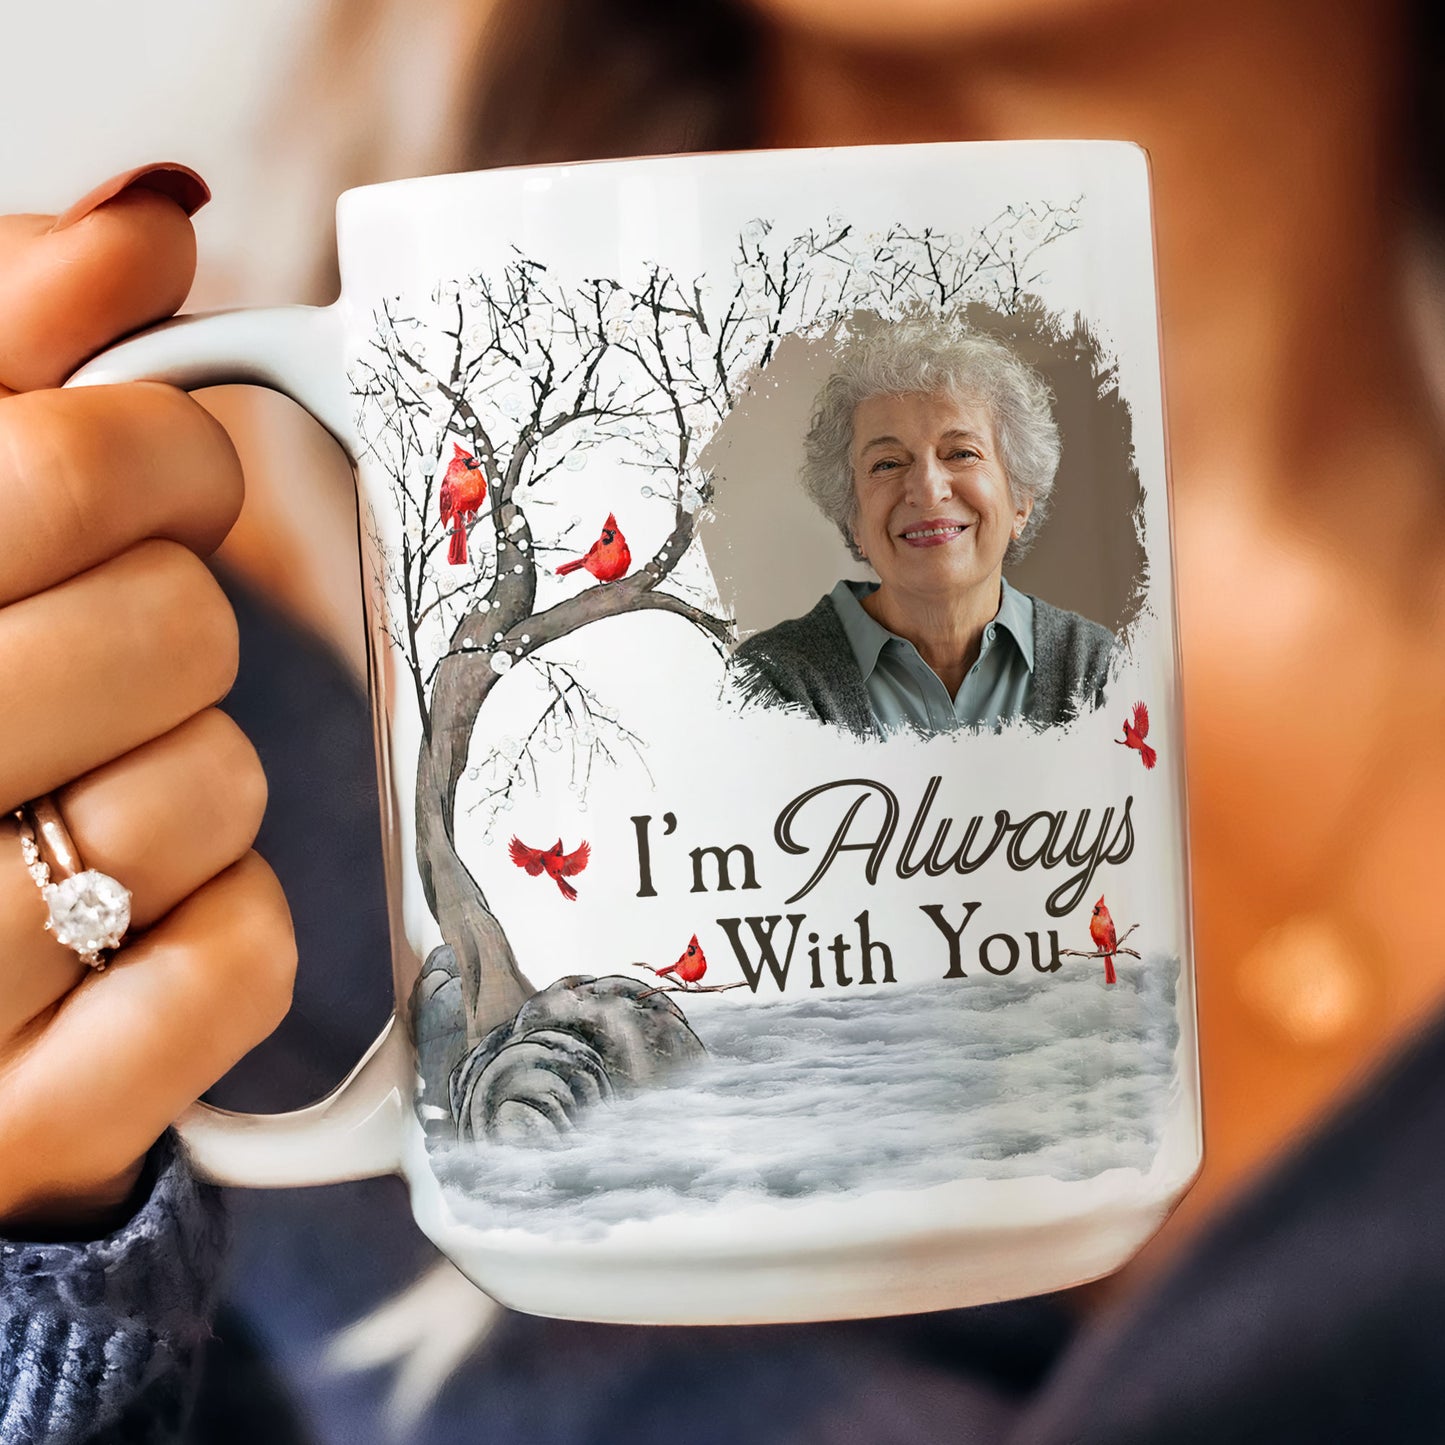 I'm Always With You - Personalized Photo Mug